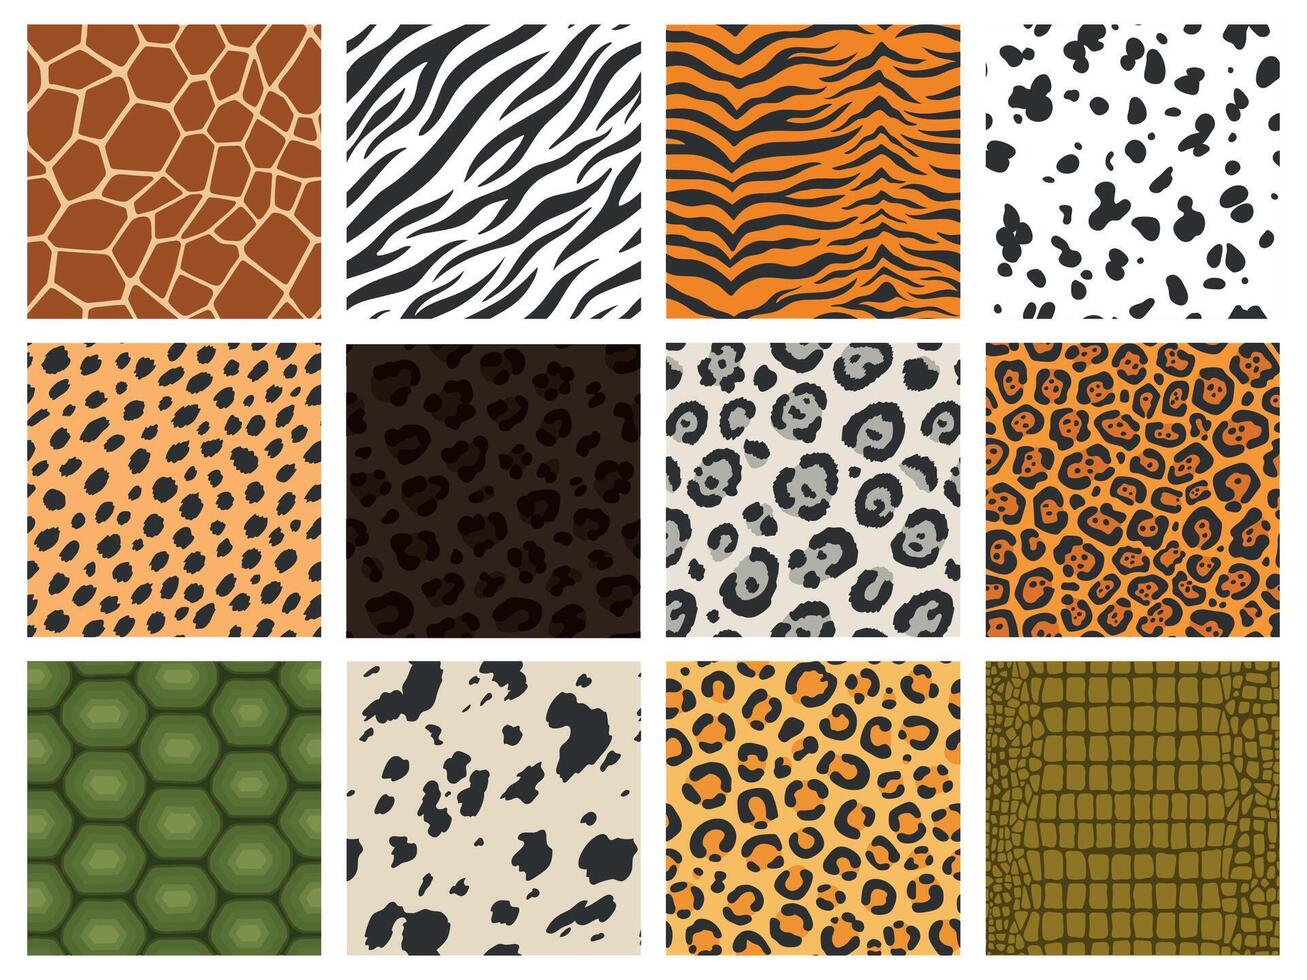 djur- skriva ut. reptil och däggdjur textur samling, tiger leopard zebra hud kamouflage utskrift, djur- päls mönster. vektor sömlös mode uppsättning